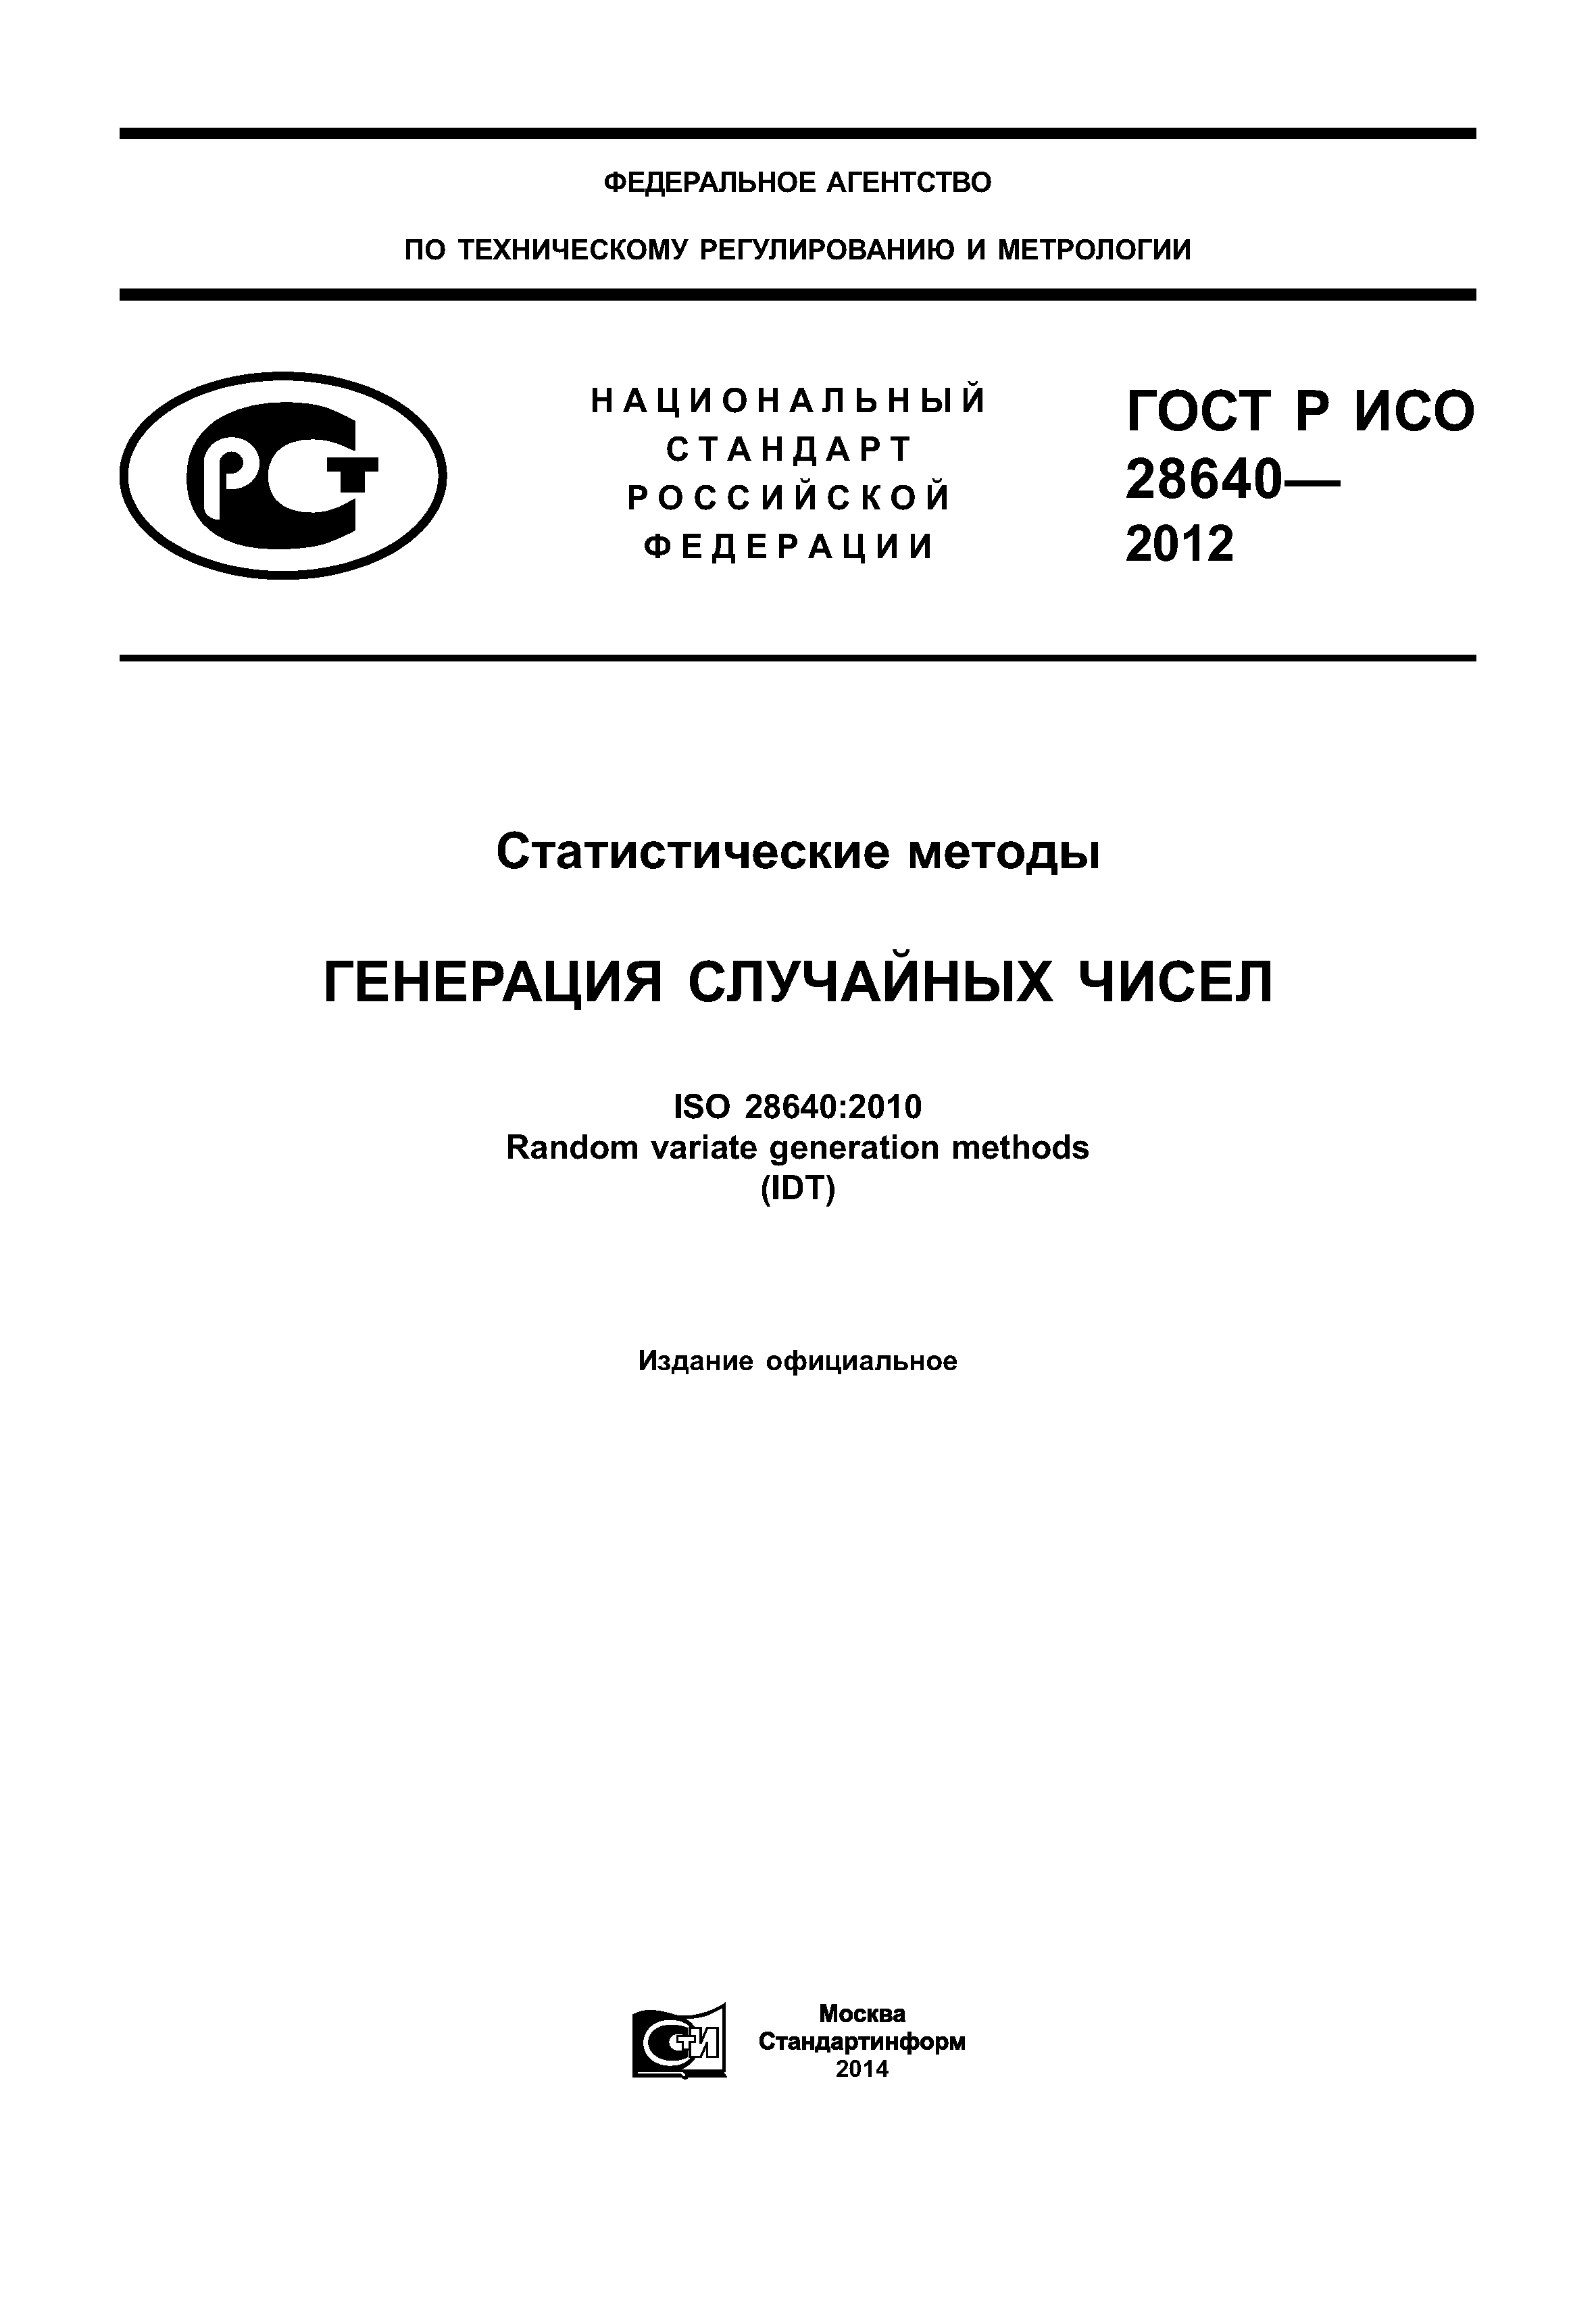 ГОСТ Р ИСО 28640-2012